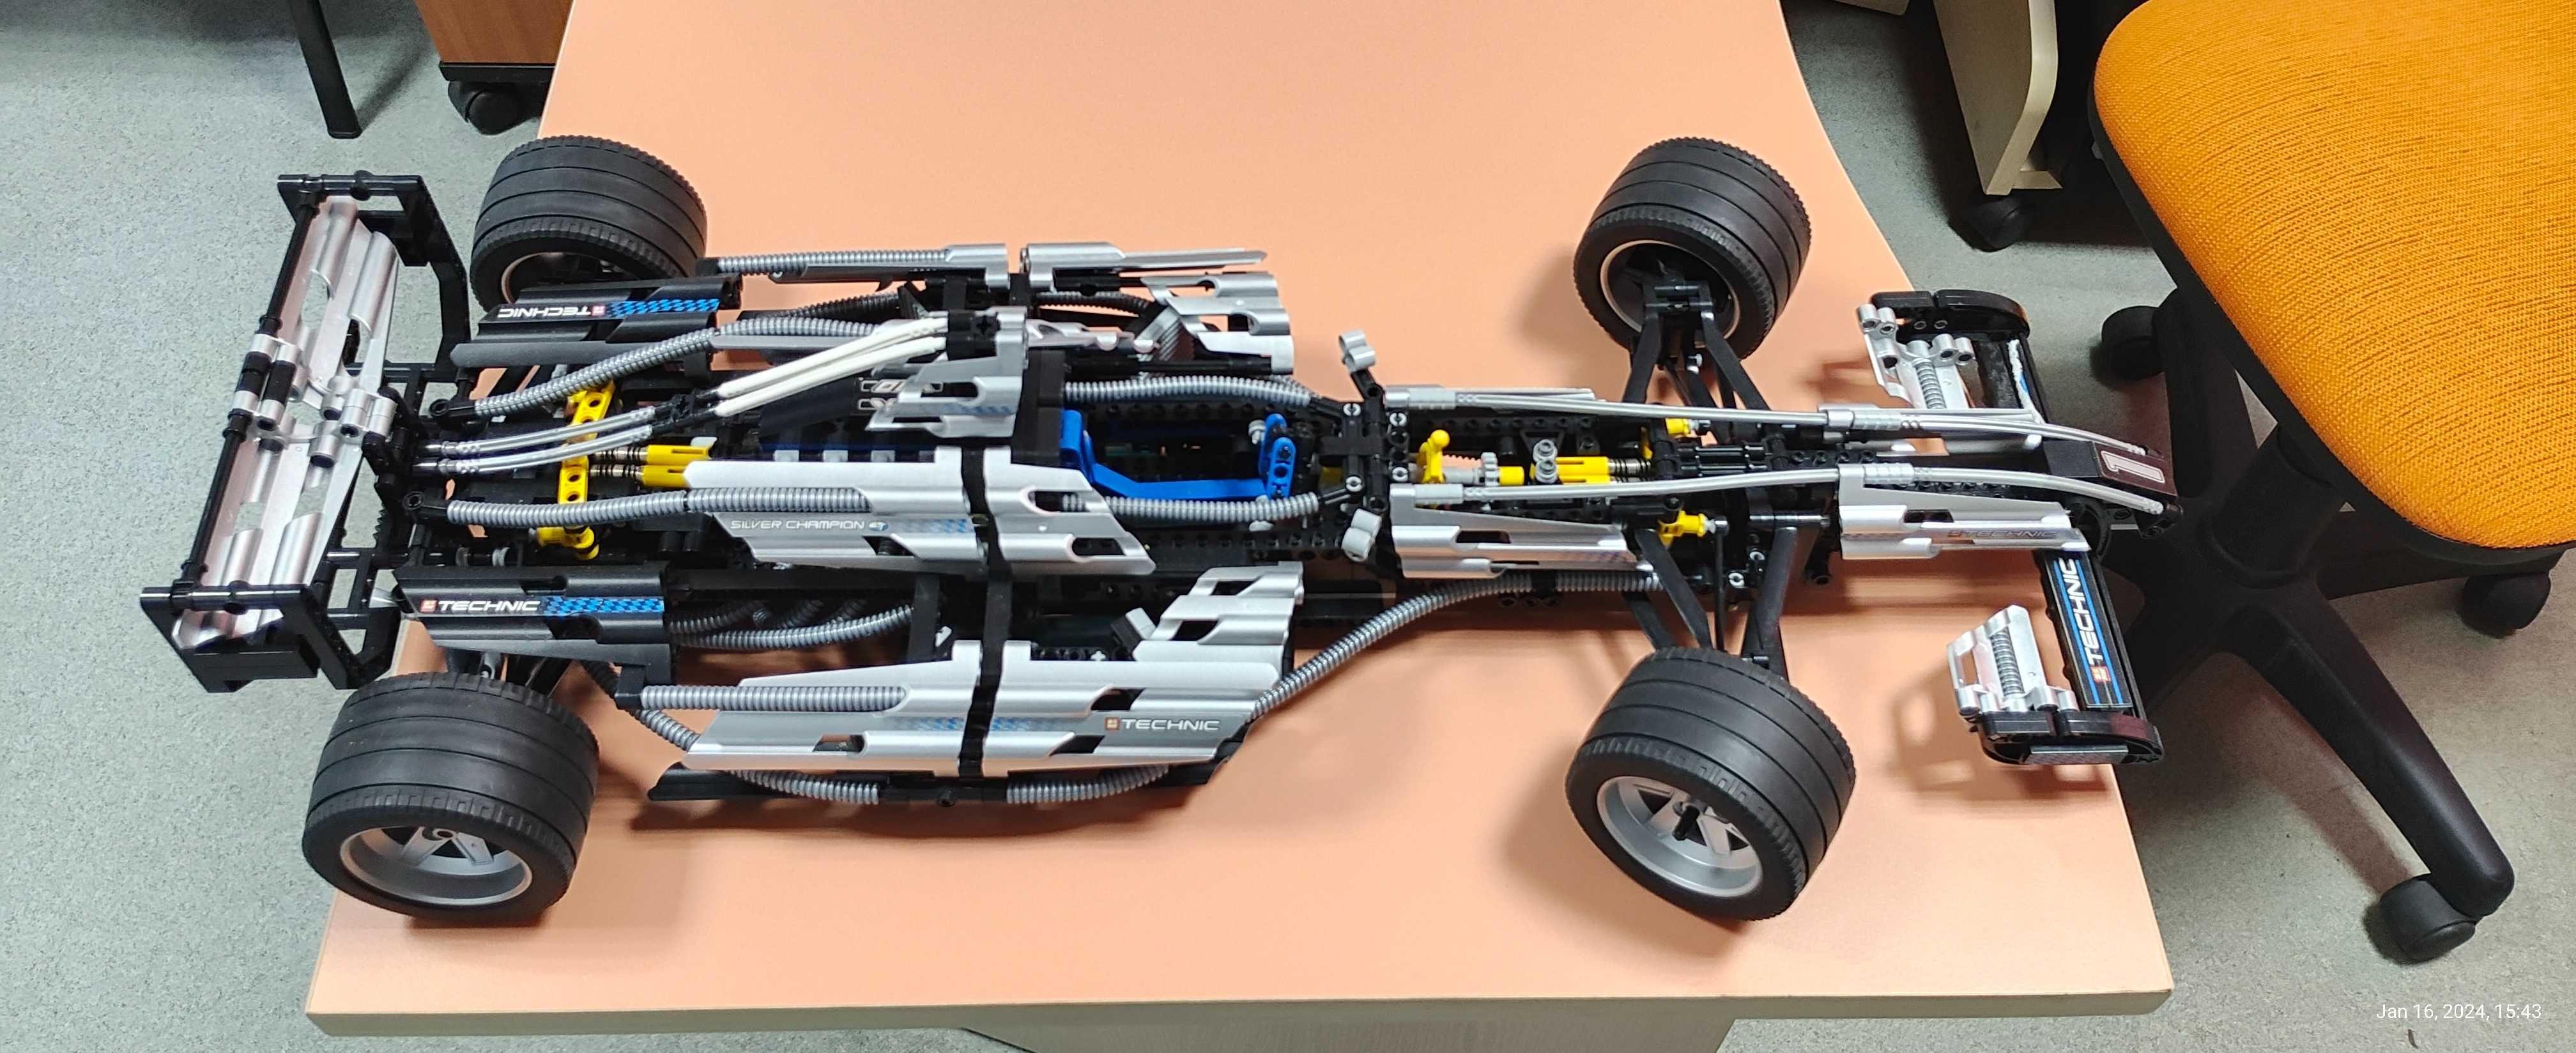 Masini de curse F1 tip LEGO